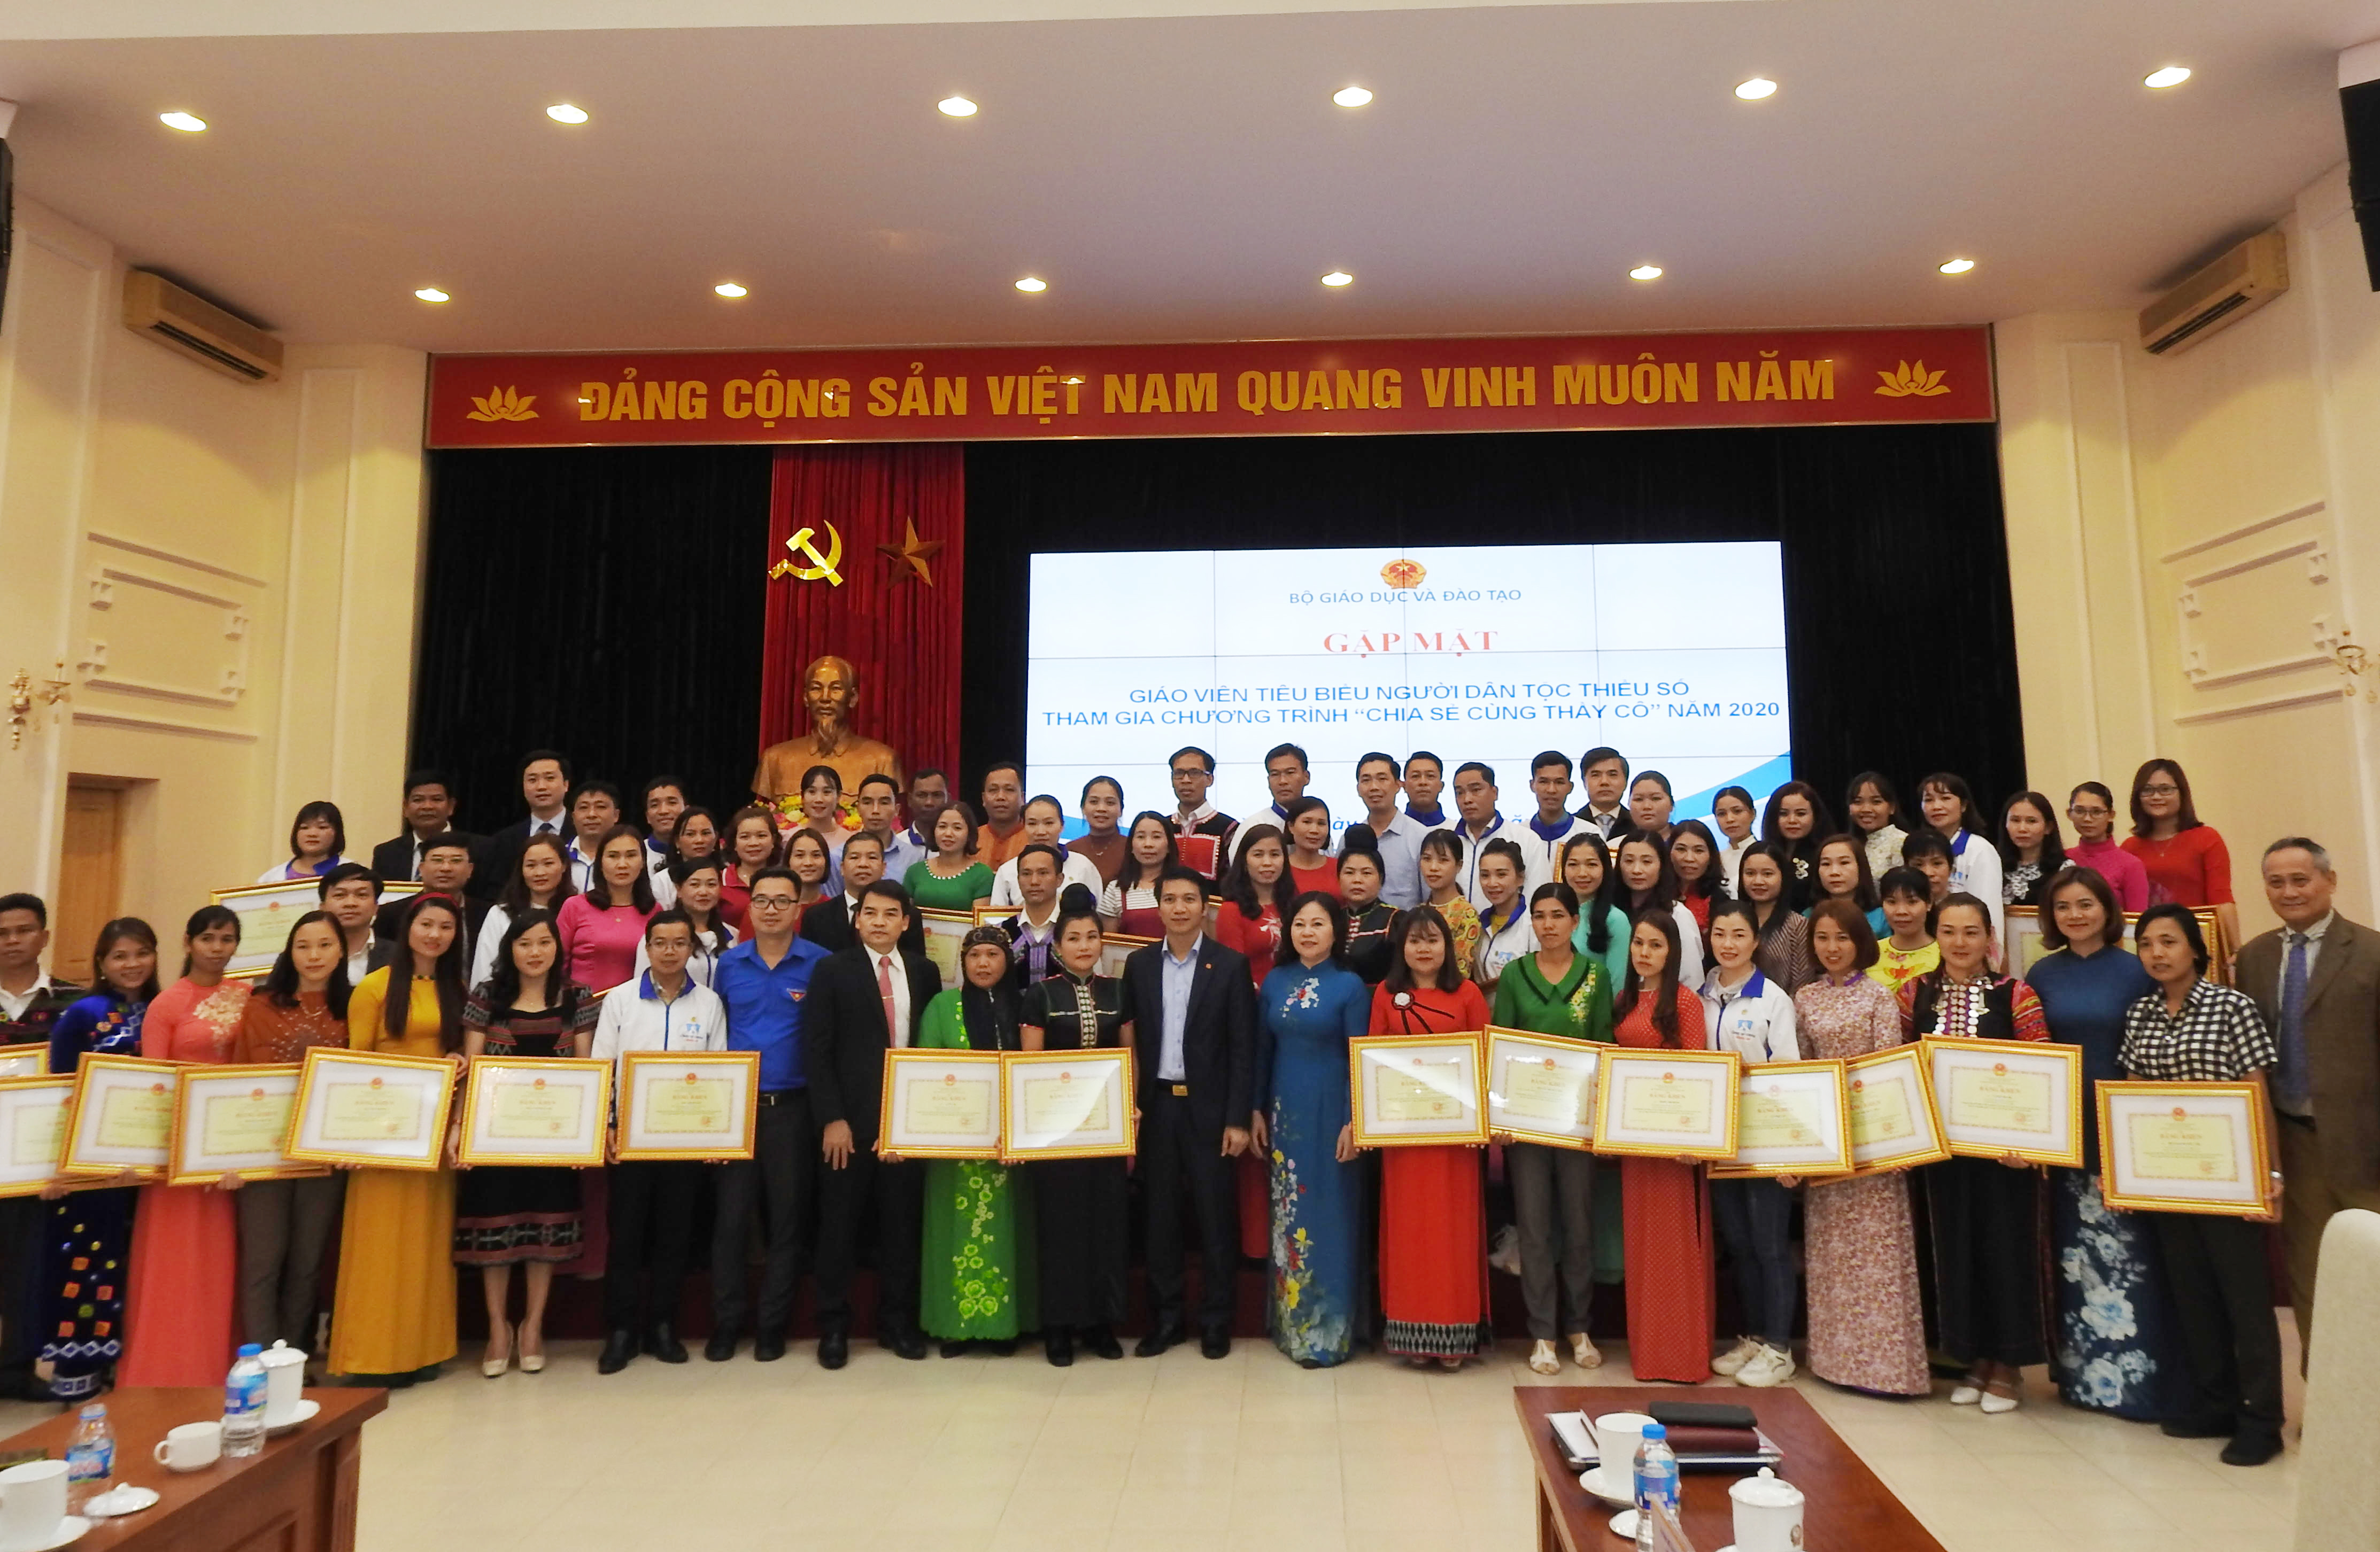 Thứ trưởng Bộ Giáo dục và Đào tạo Ngô Thị Minh chụp ảnh lưu niệm cùng các thầy cô giáo